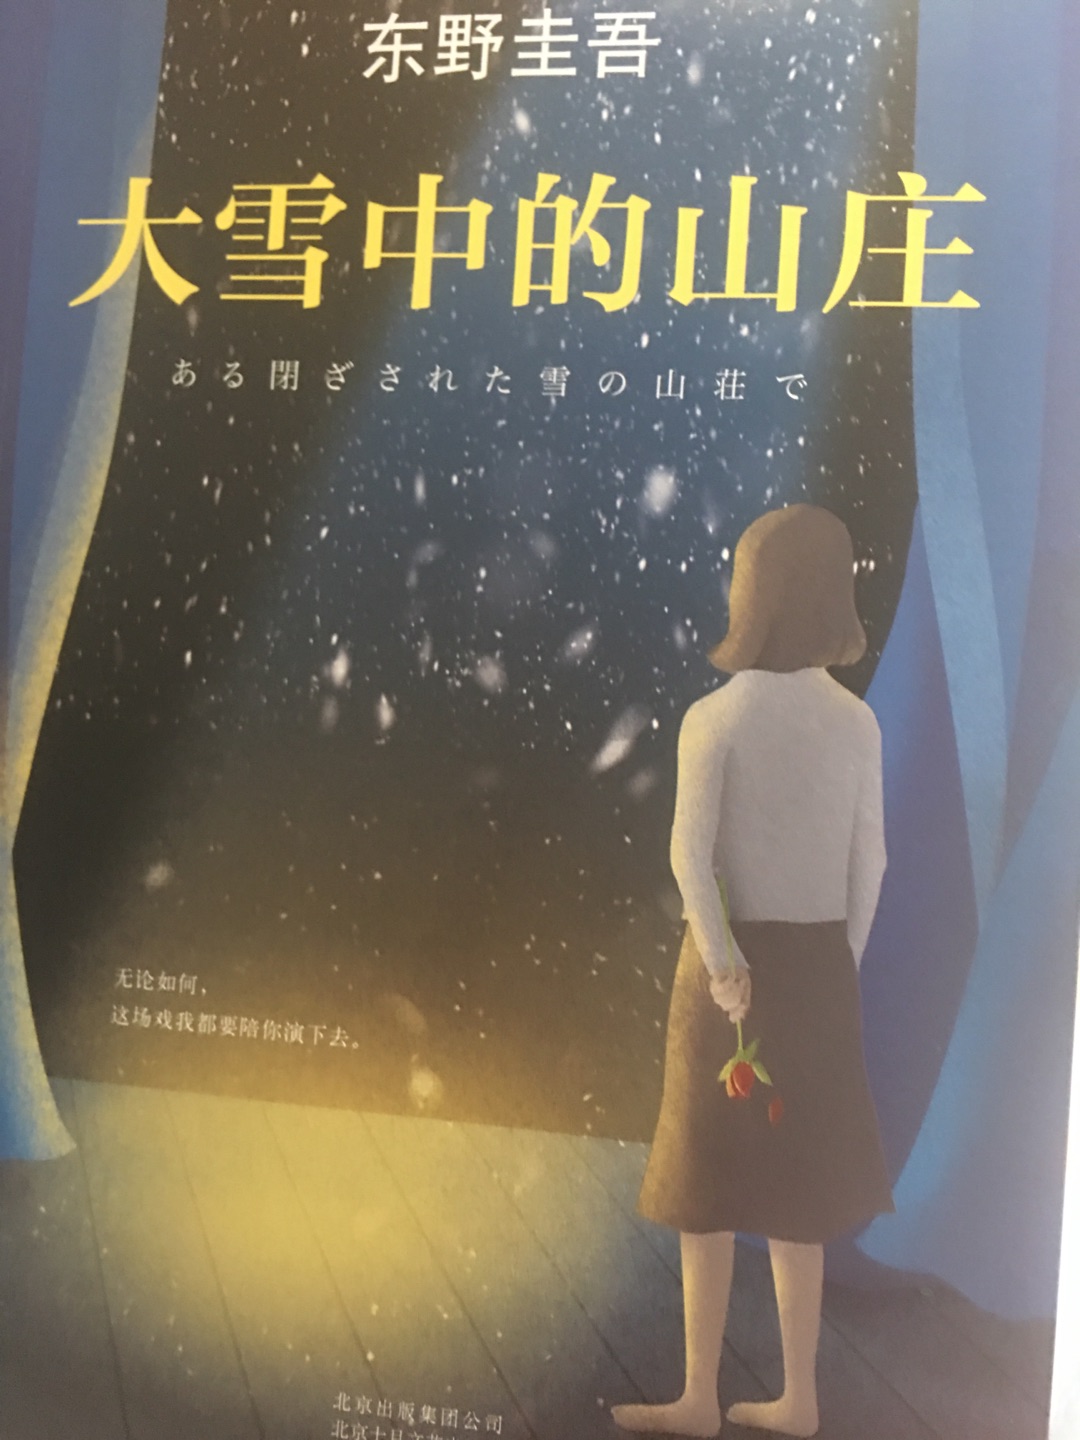 最喜欢看东野圭*的推理小说了，相信很快就会读完了！